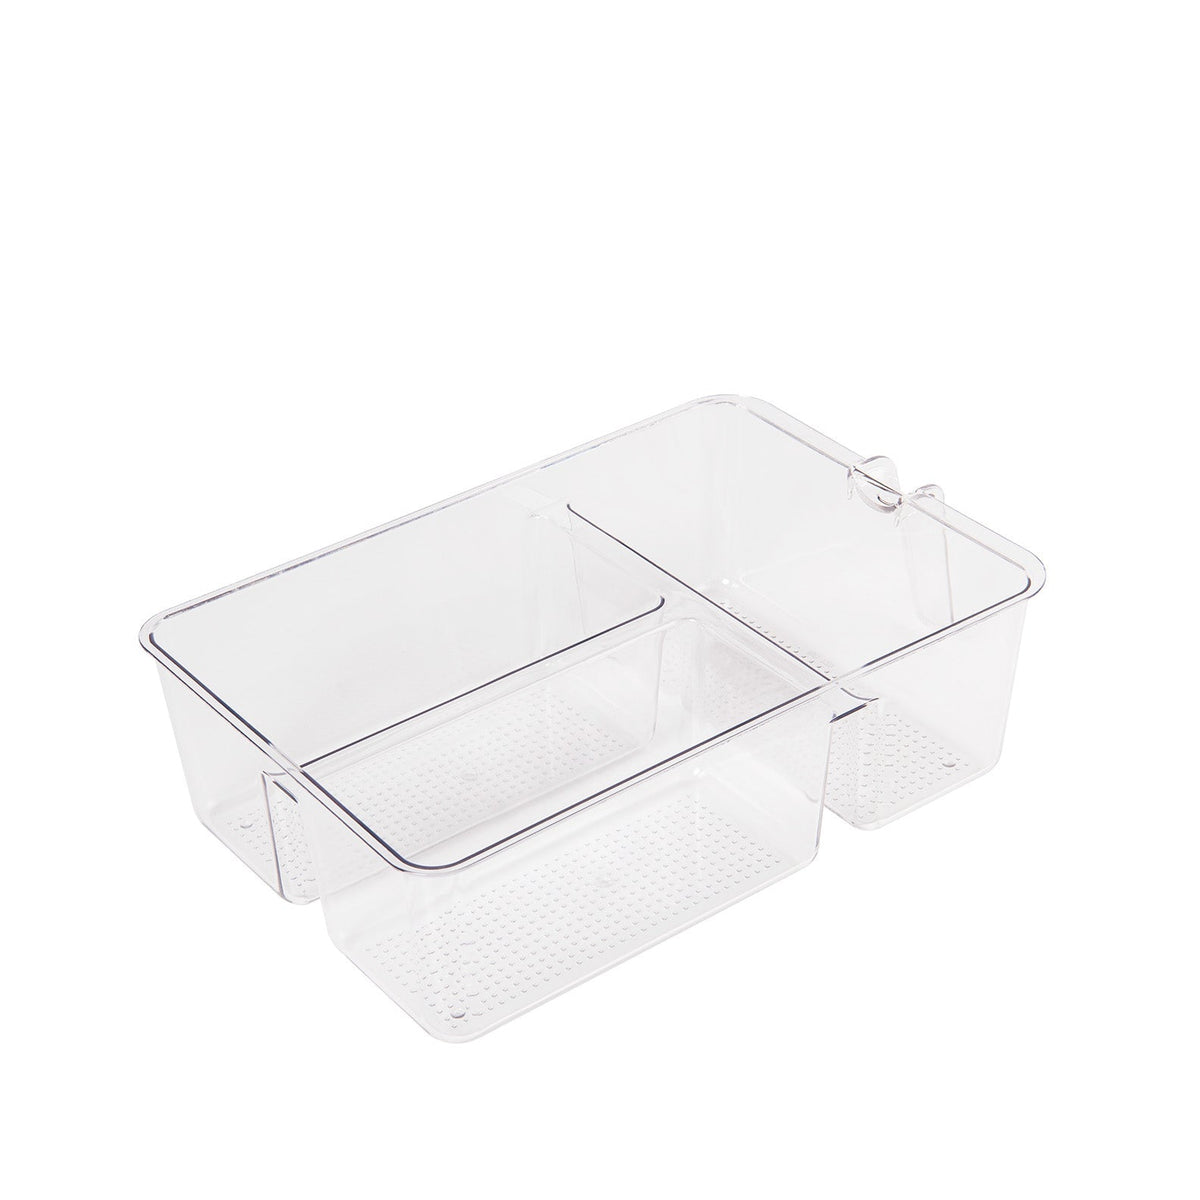 Transparent plastic container in fridge -31.5x20.3cm